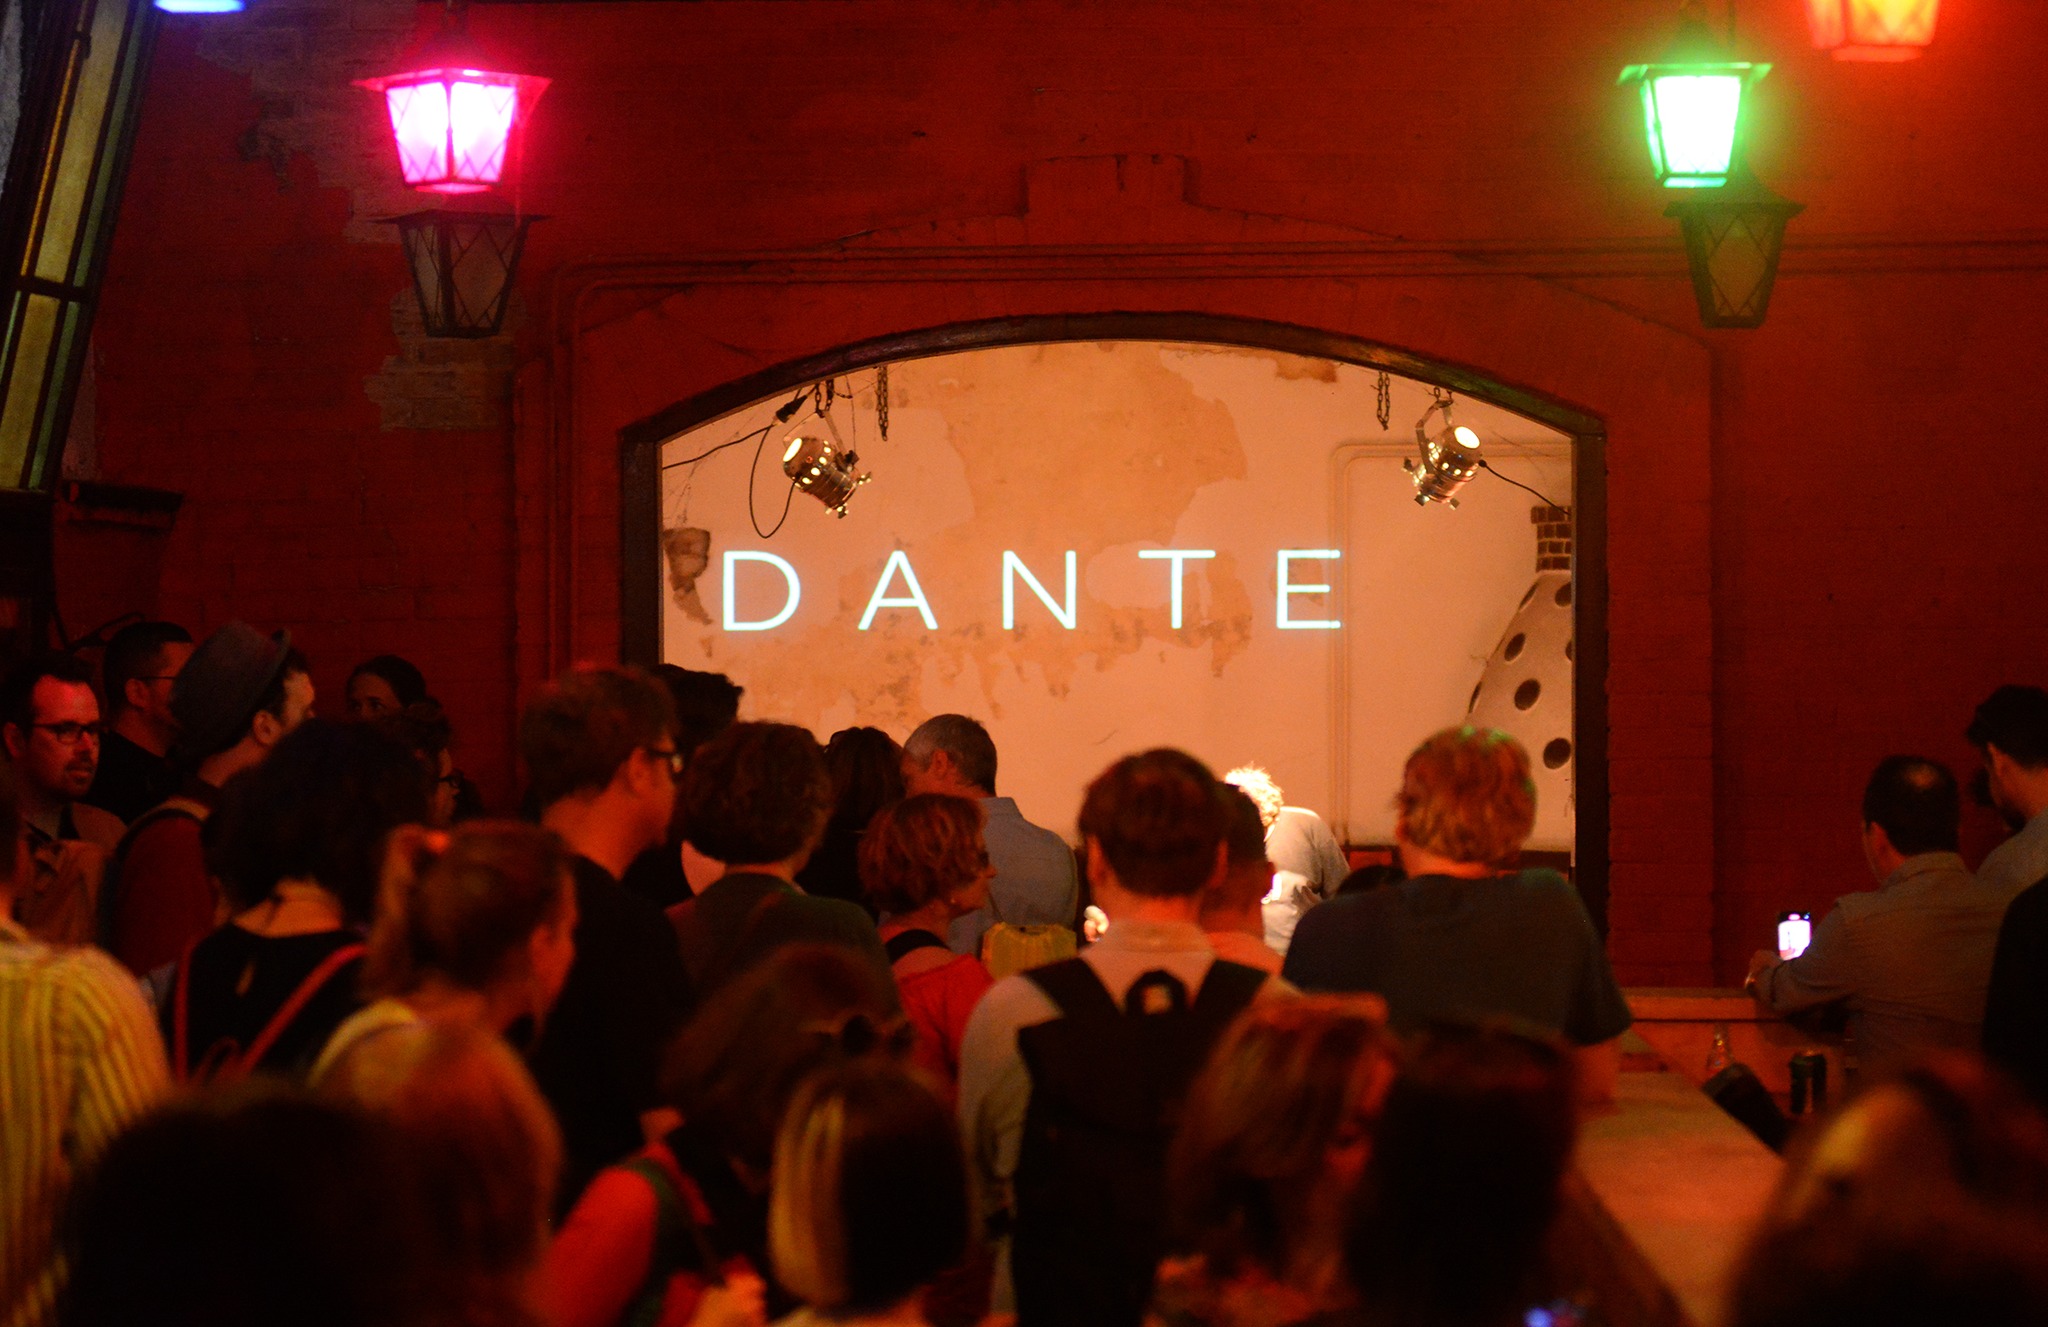 DANTE! néven új közösségi alkotótér nyílik Budán